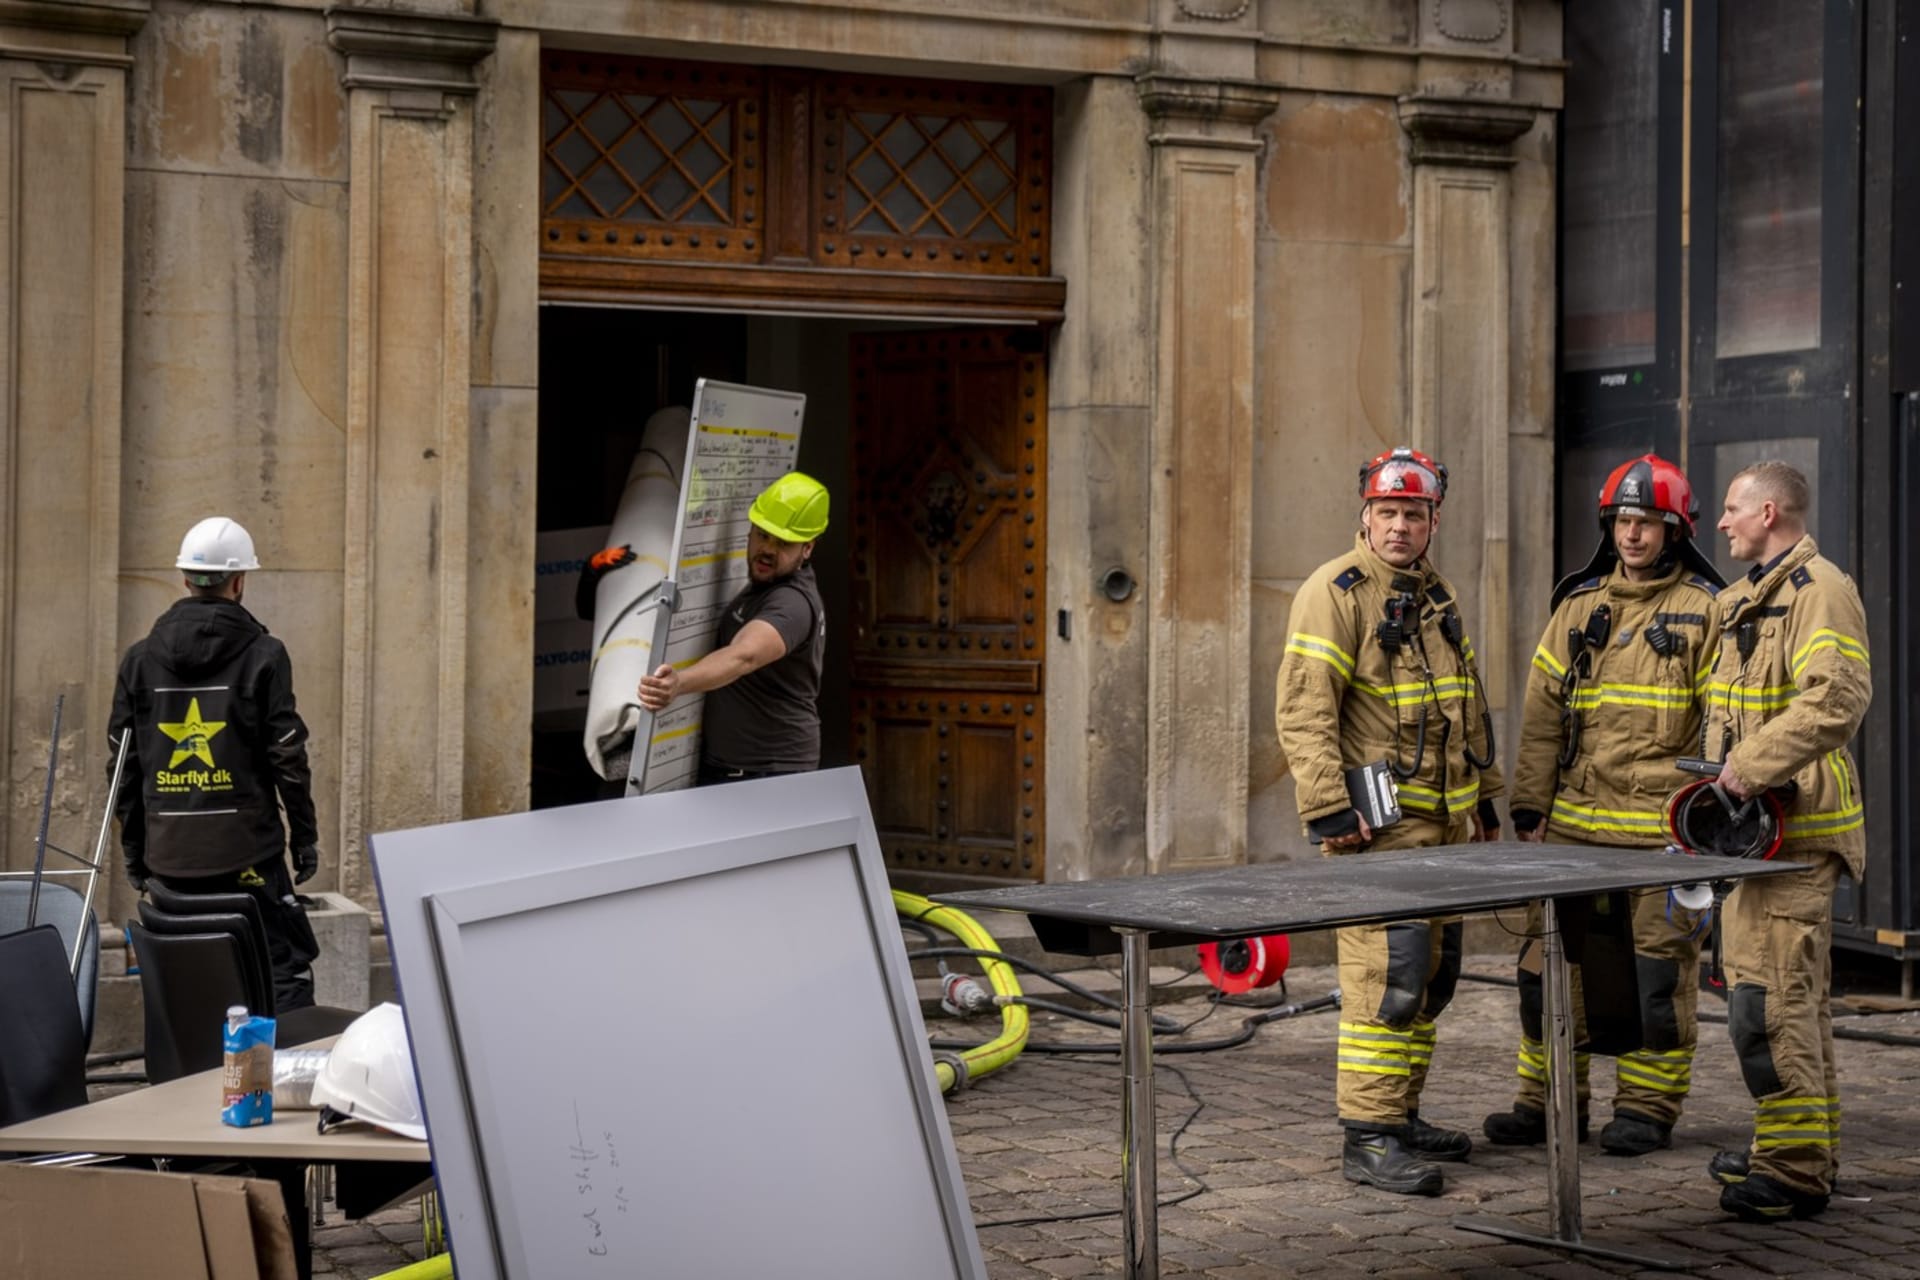 Požár kodaňské historické burzy